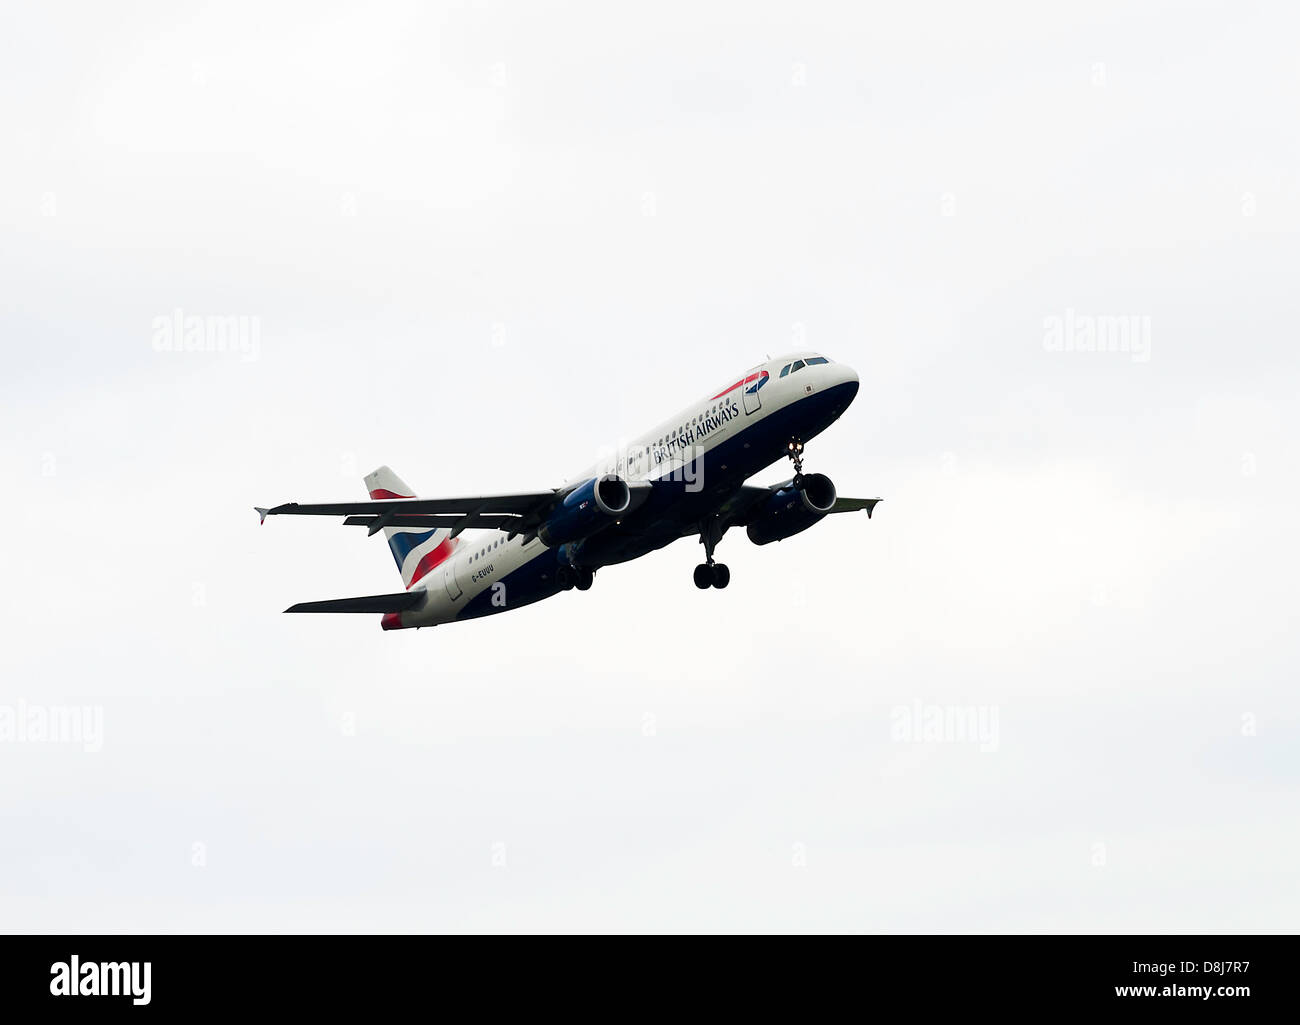 British Airways Airbus A320 avion de décoller sur le départ à l'Aéroport International de Manchester en Angleterre Royaume-Uni UK Banque D'Images